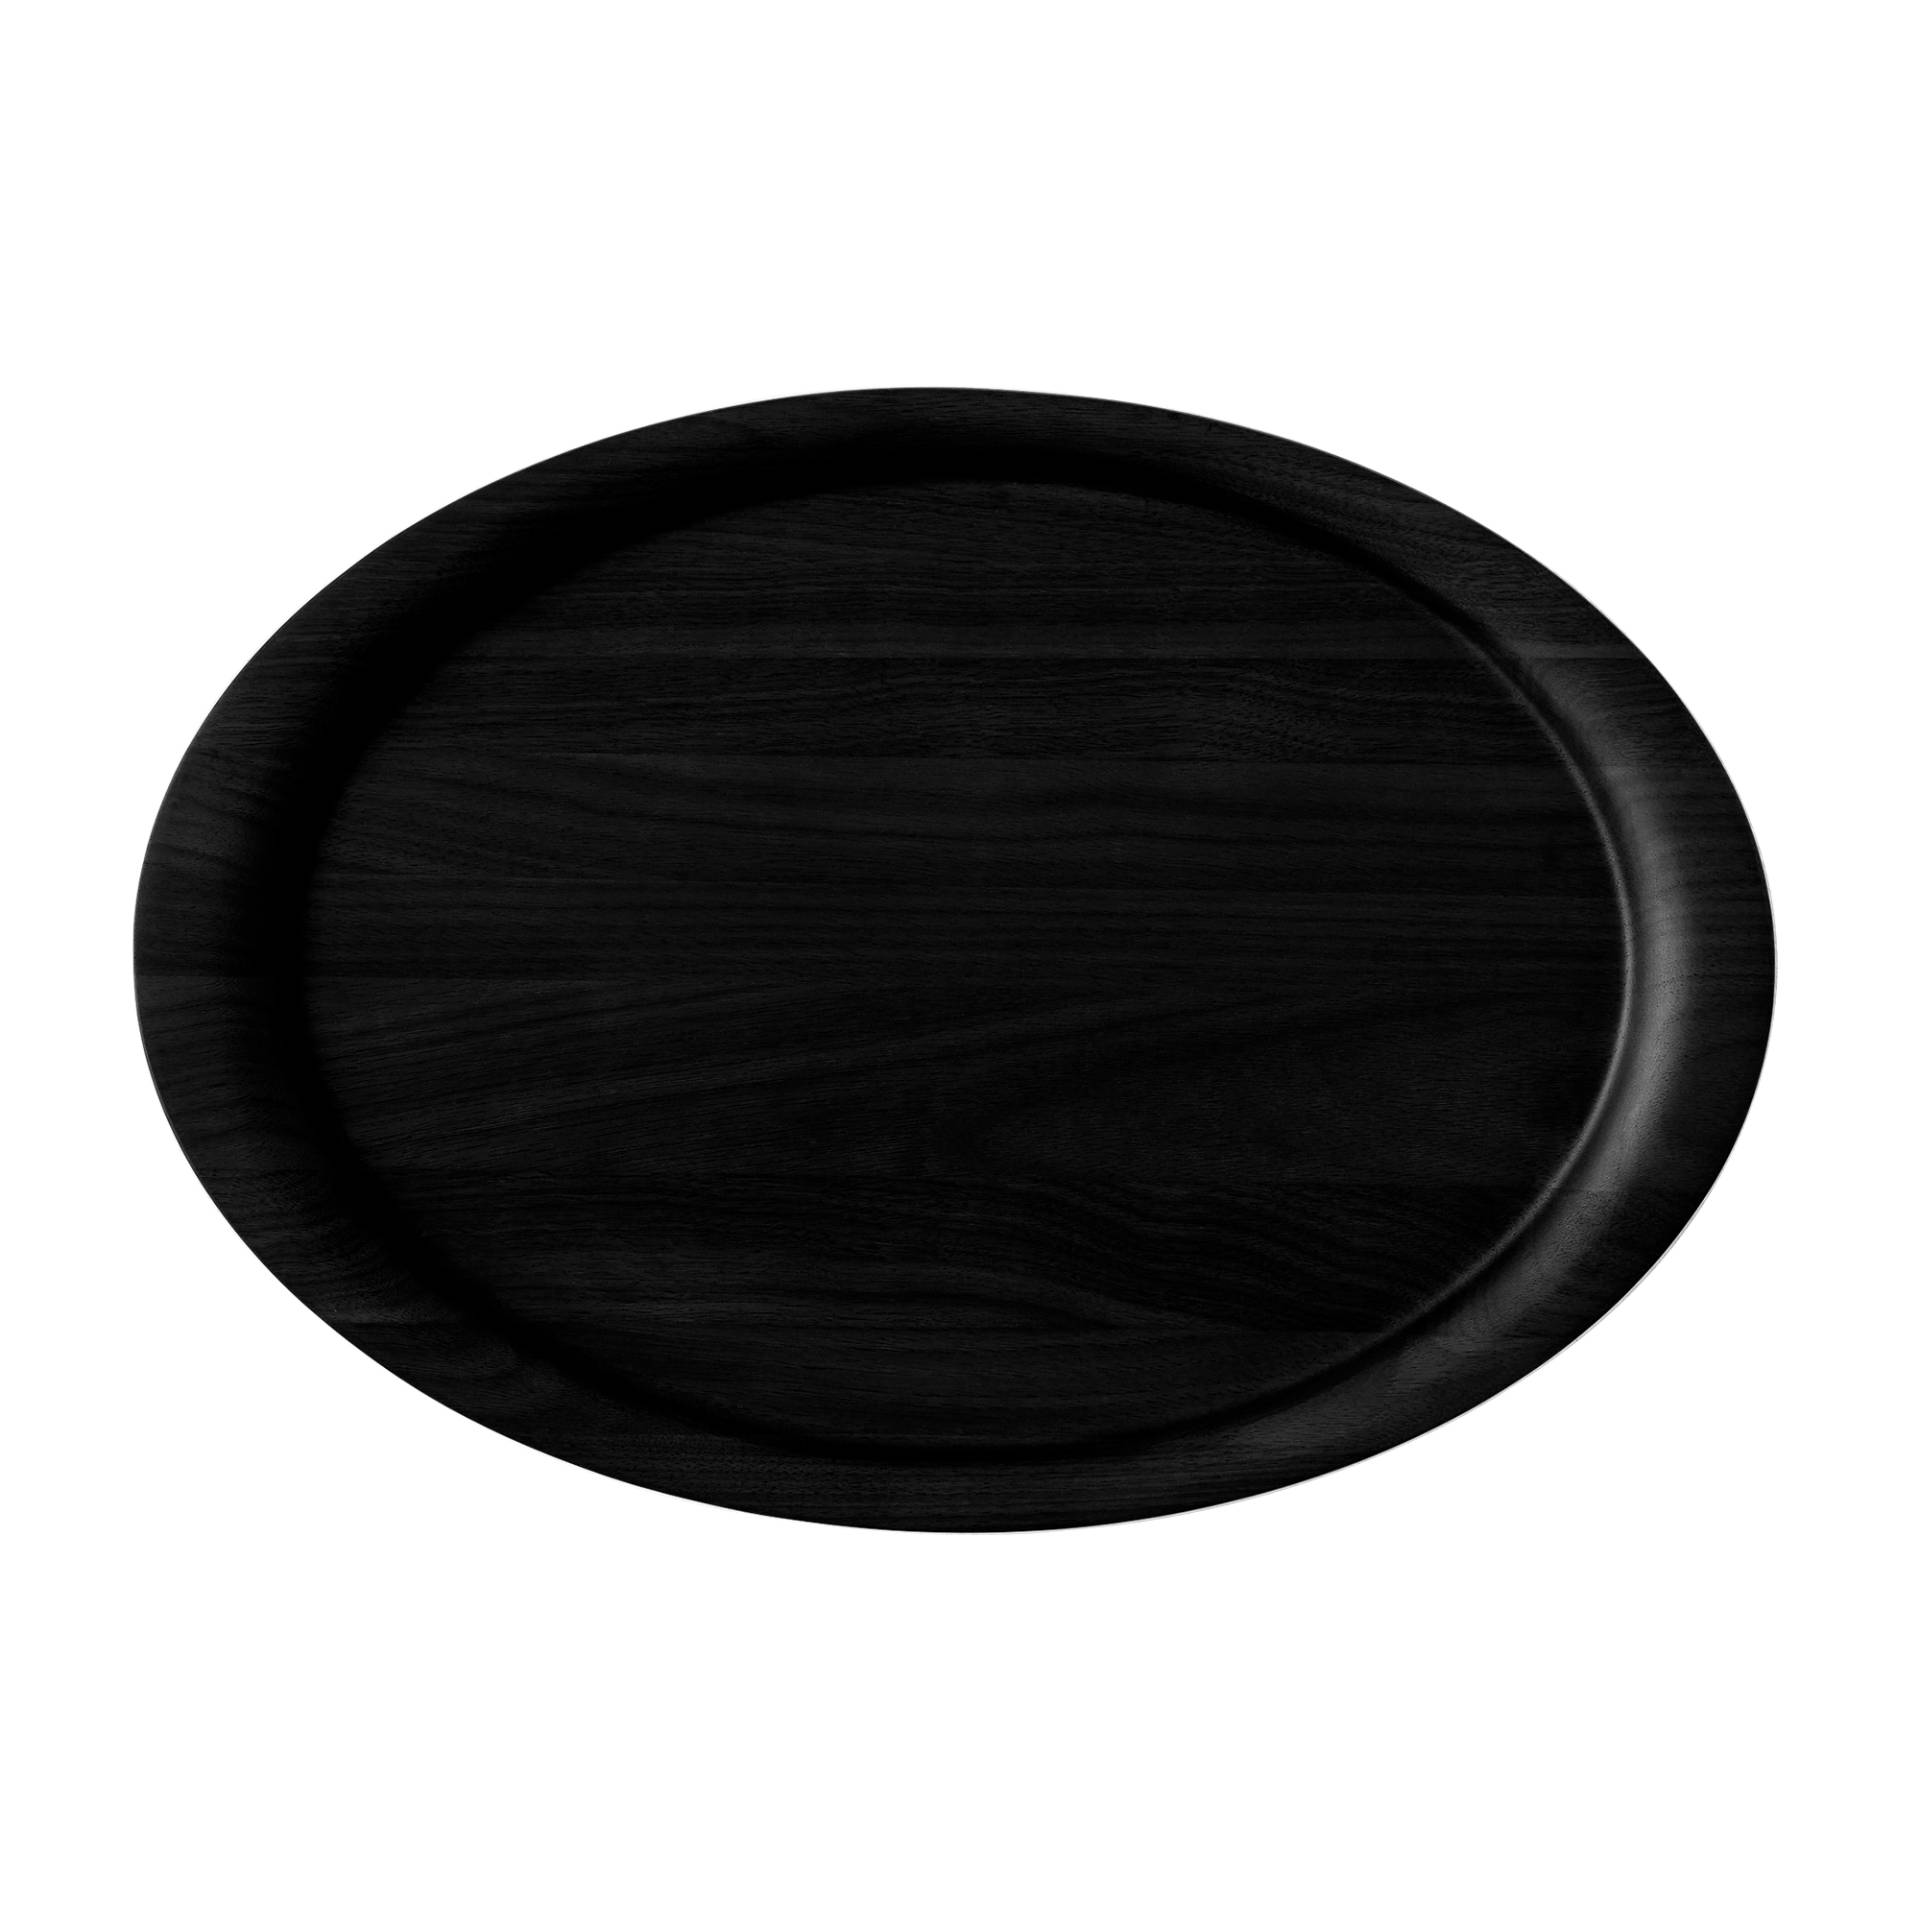 &Tradition - Collect Tray SC64 Tablett - Eiche massiv schwarz/handpoliert/lackiert/LxBxH 40x28x2cm von &Tradition